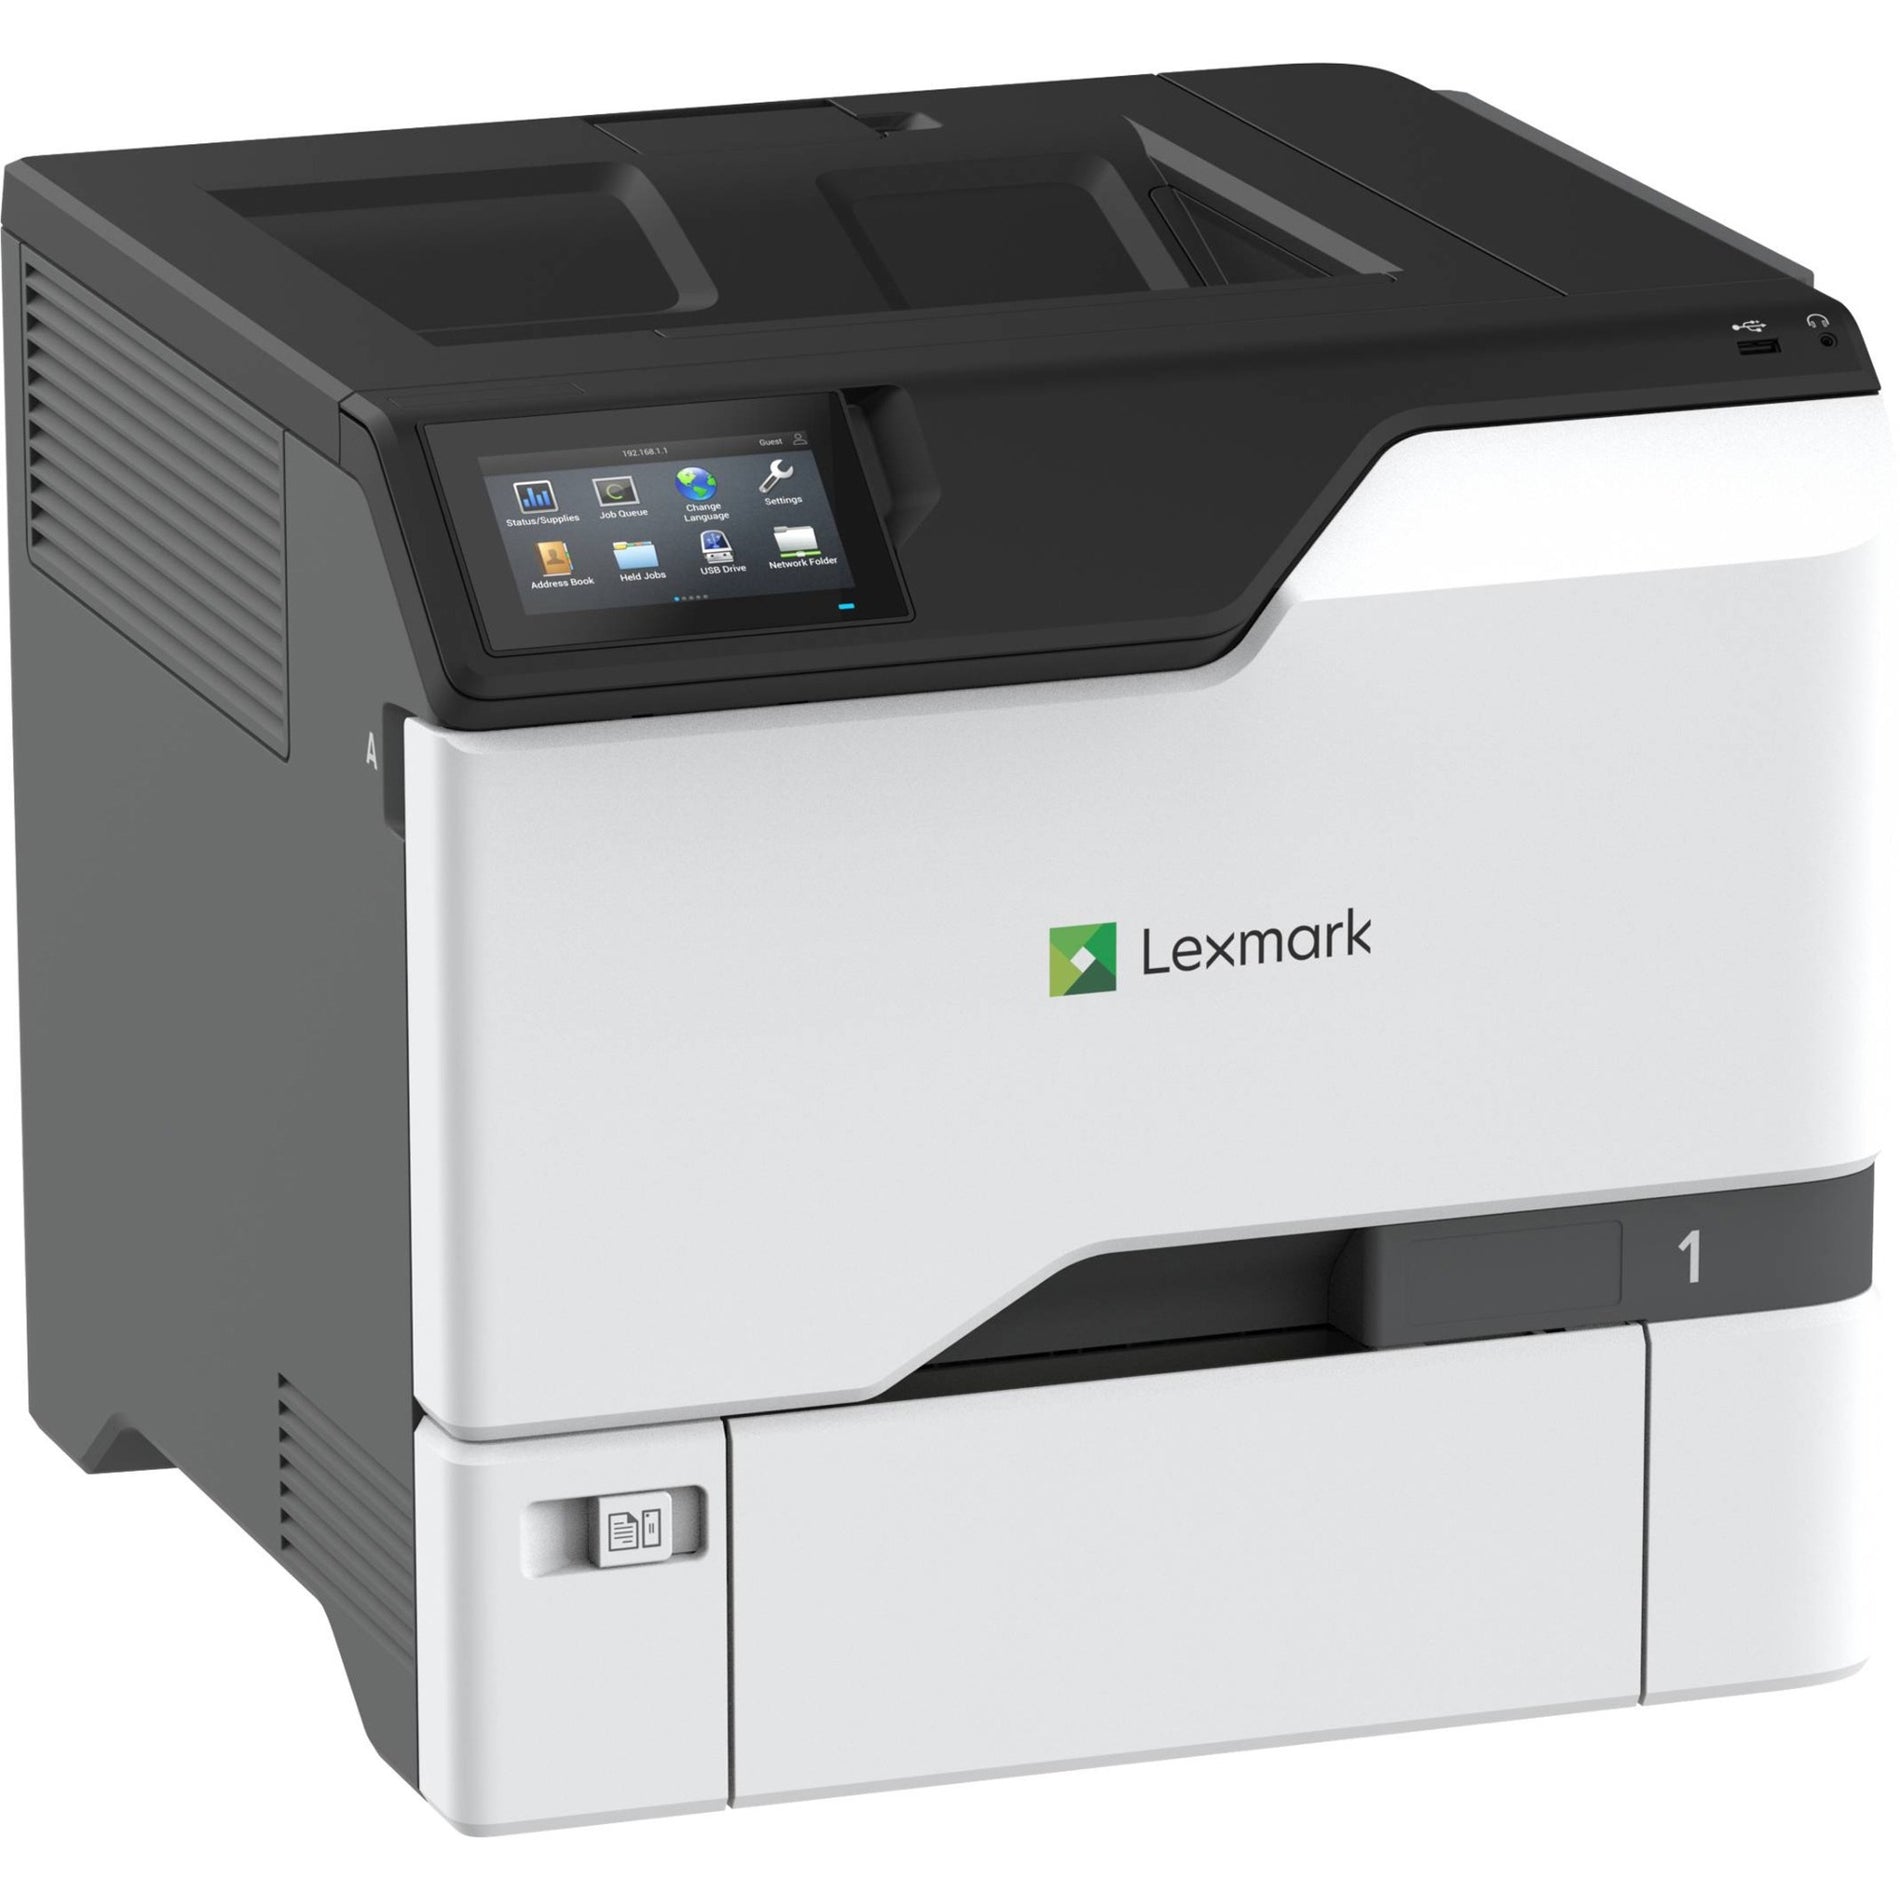 雷士 (Lexmark) CS730de 雷射打印机，彩色，自动双面打印，USB 连接 雷士 (Lexmark)